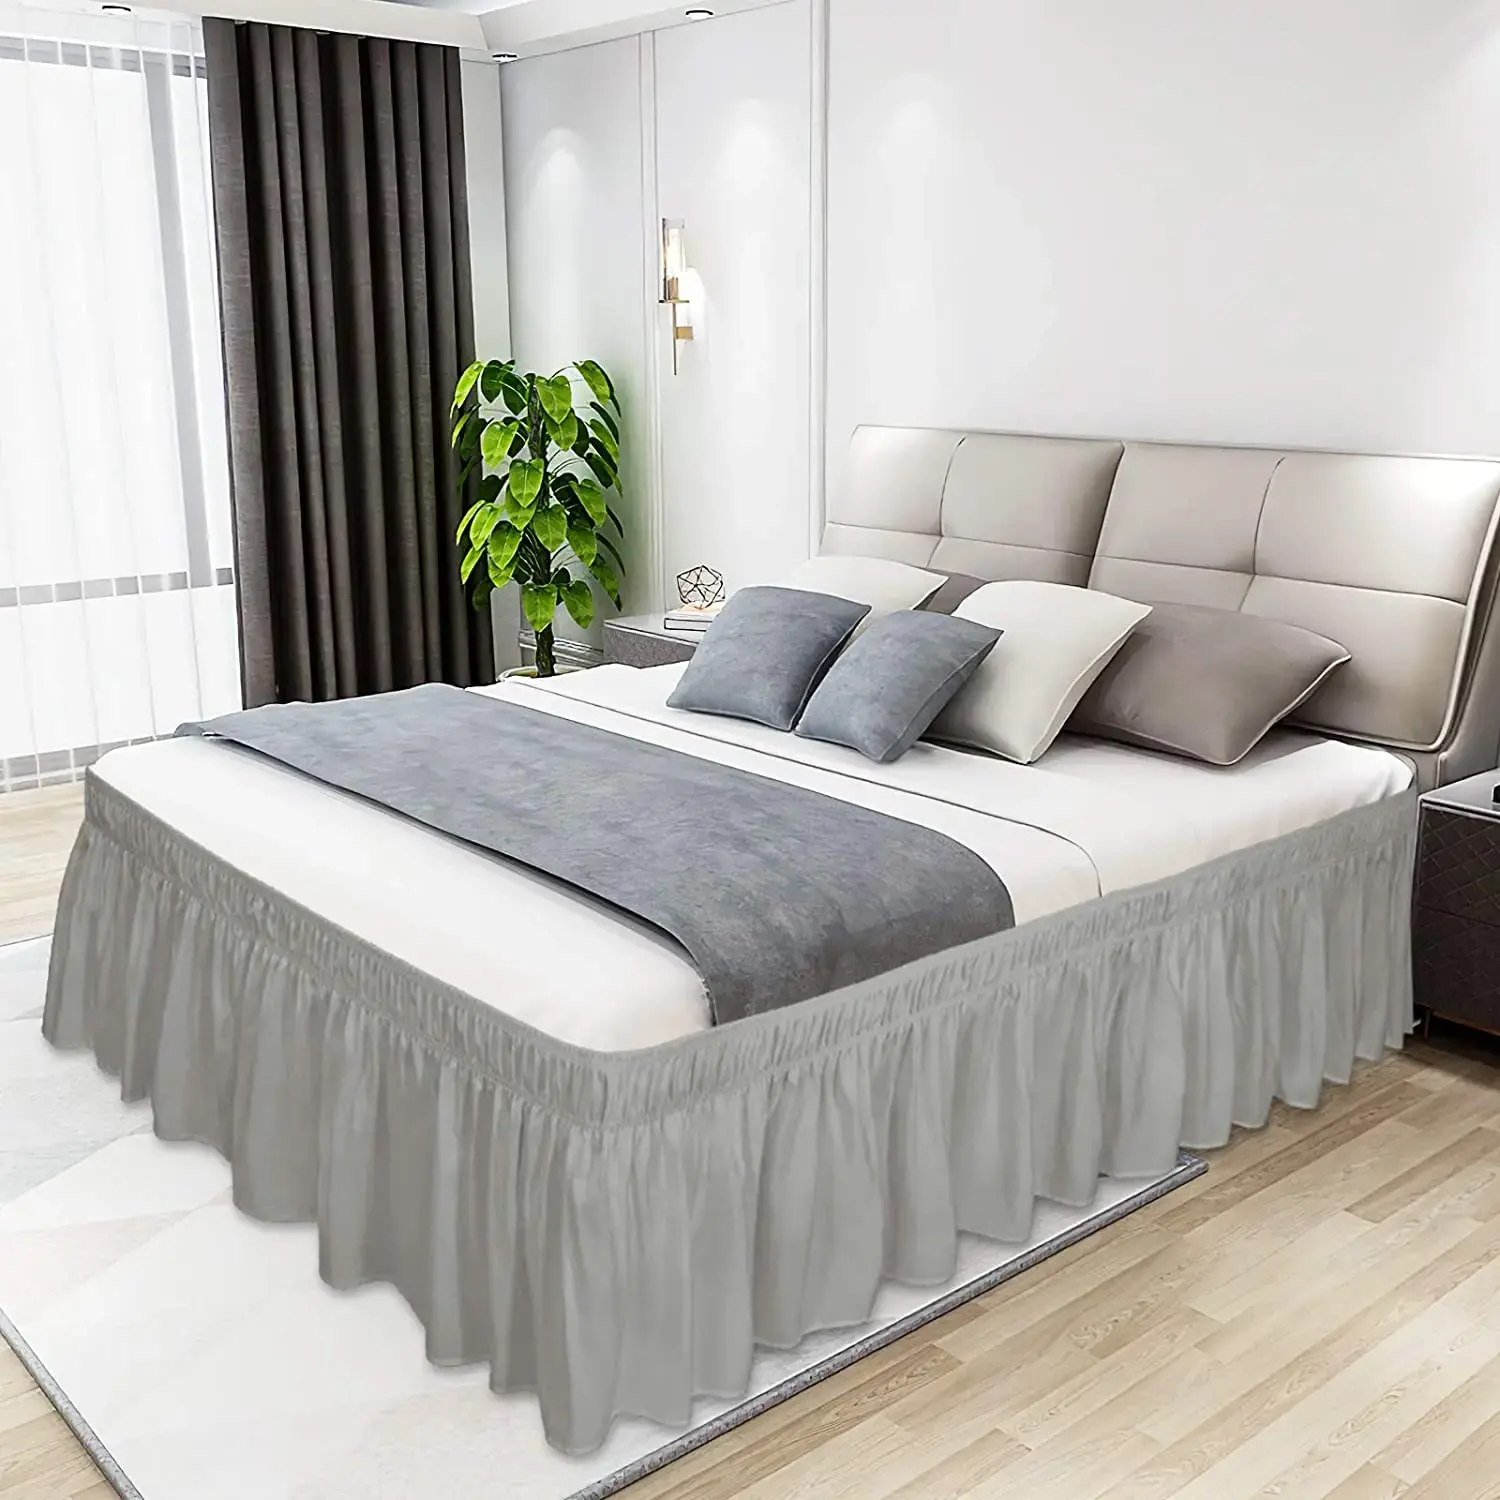 퀸 사이즈 침대 스커트 주름 방지 기능 맞춤형 홈 호텔 웨딩 짠 사계절 프릴 침대 스커트